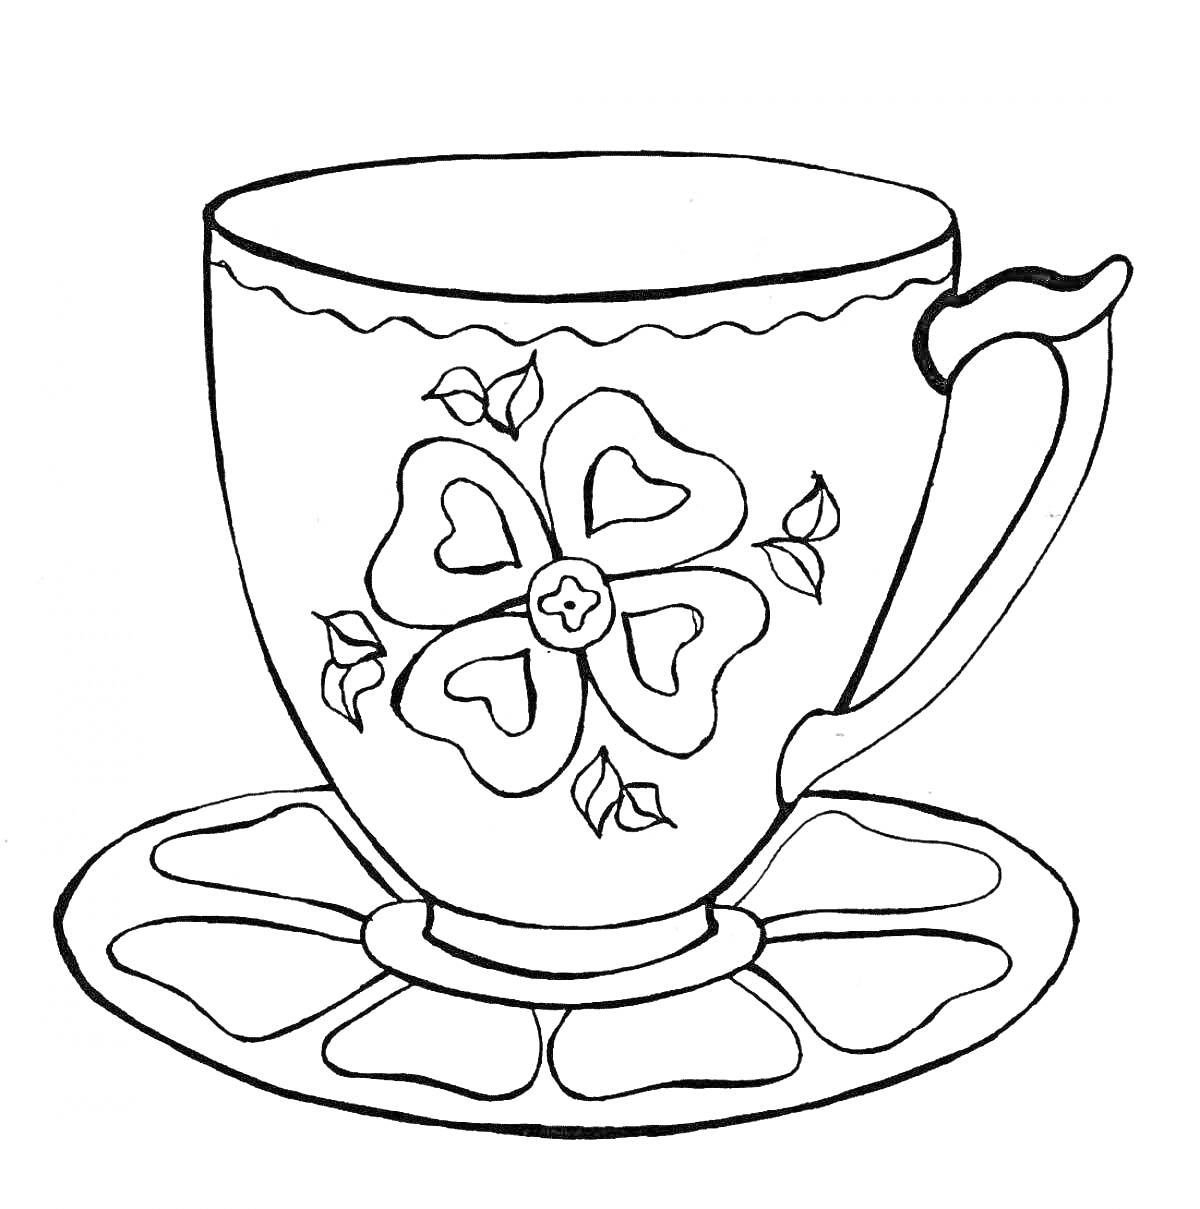 Раскраска Чашка с цветочным орнаментом на блюдце